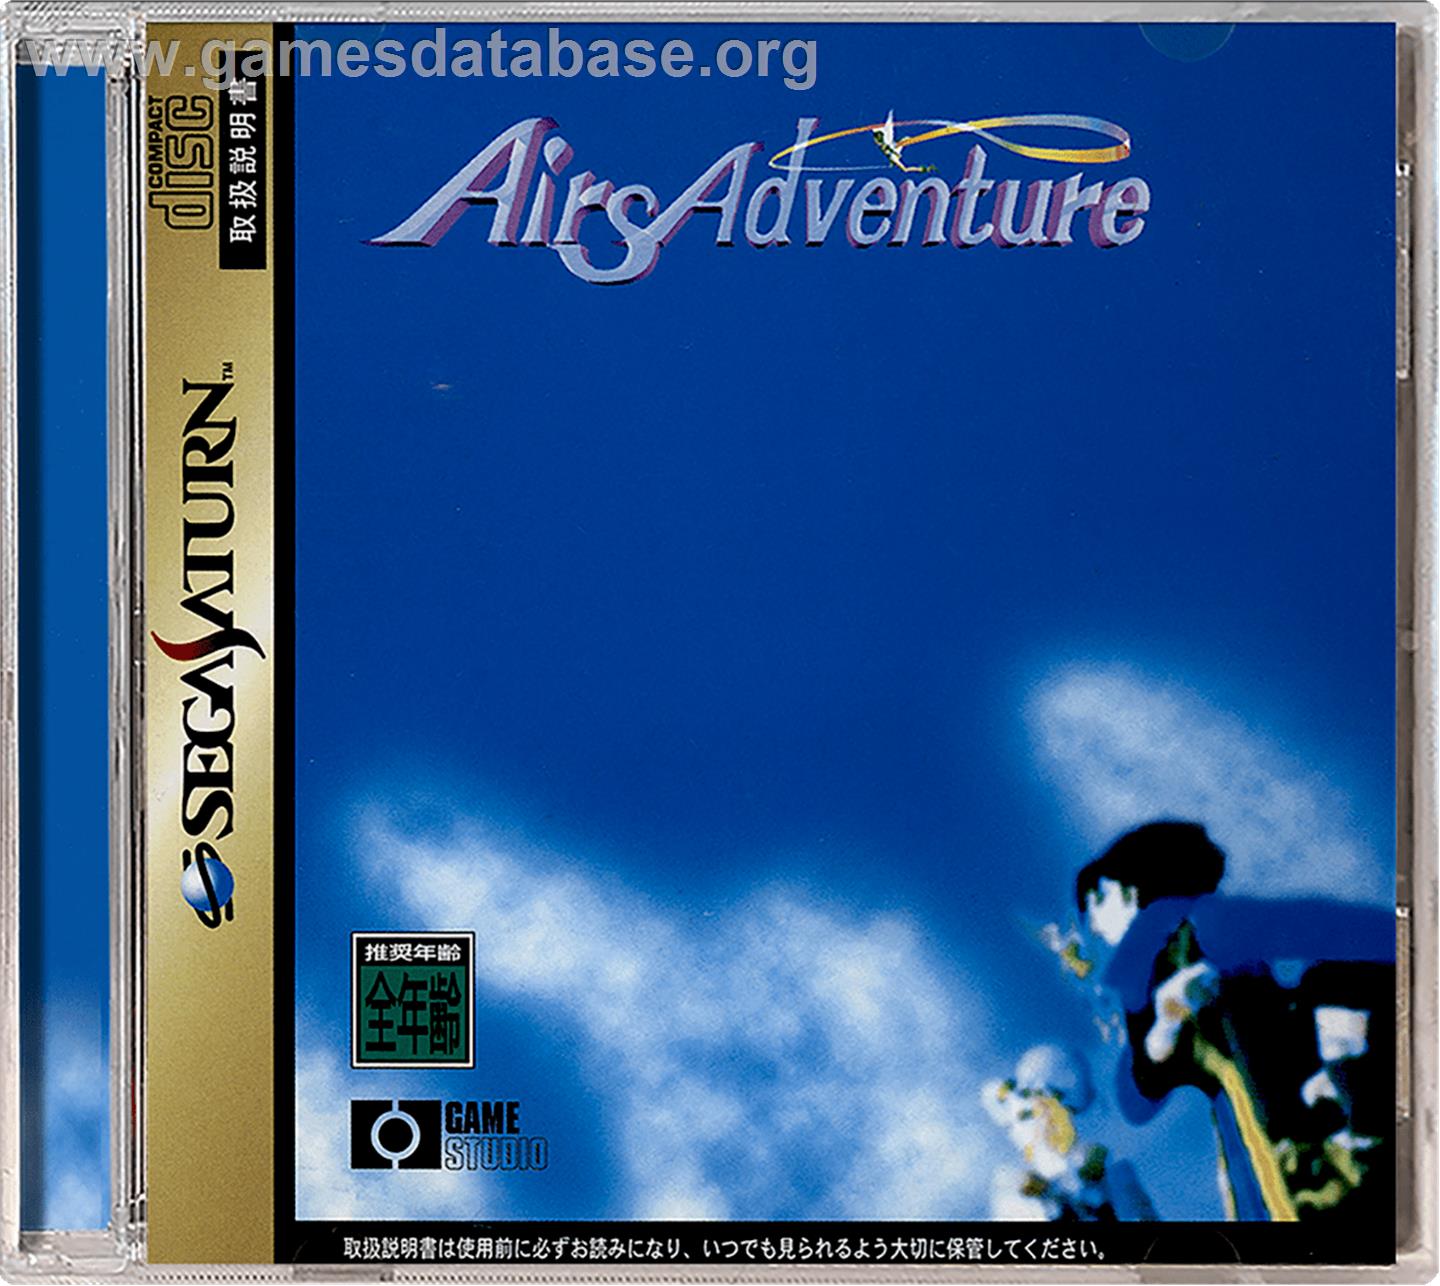 Airs Adventure - Sega Saturn - Artwork - Box